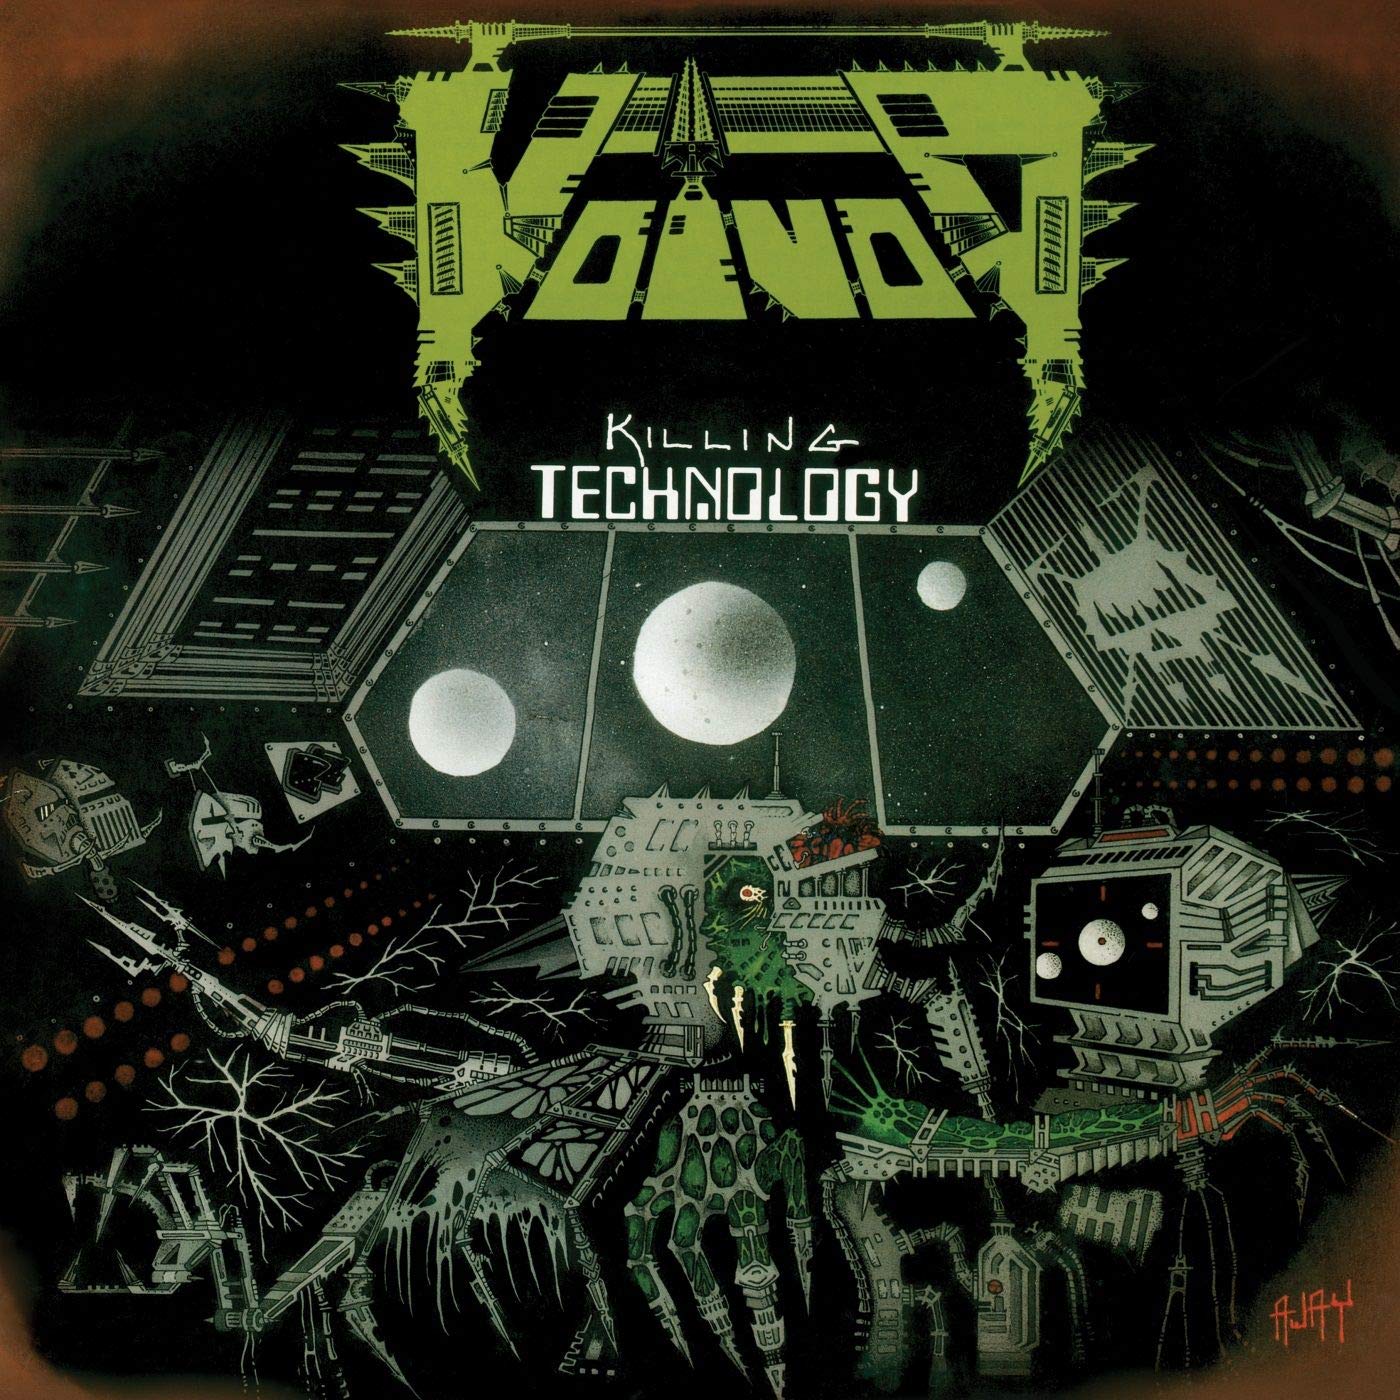 Album associé à la Black Vortex par Hoppy Road : Voivod - Killing Technology